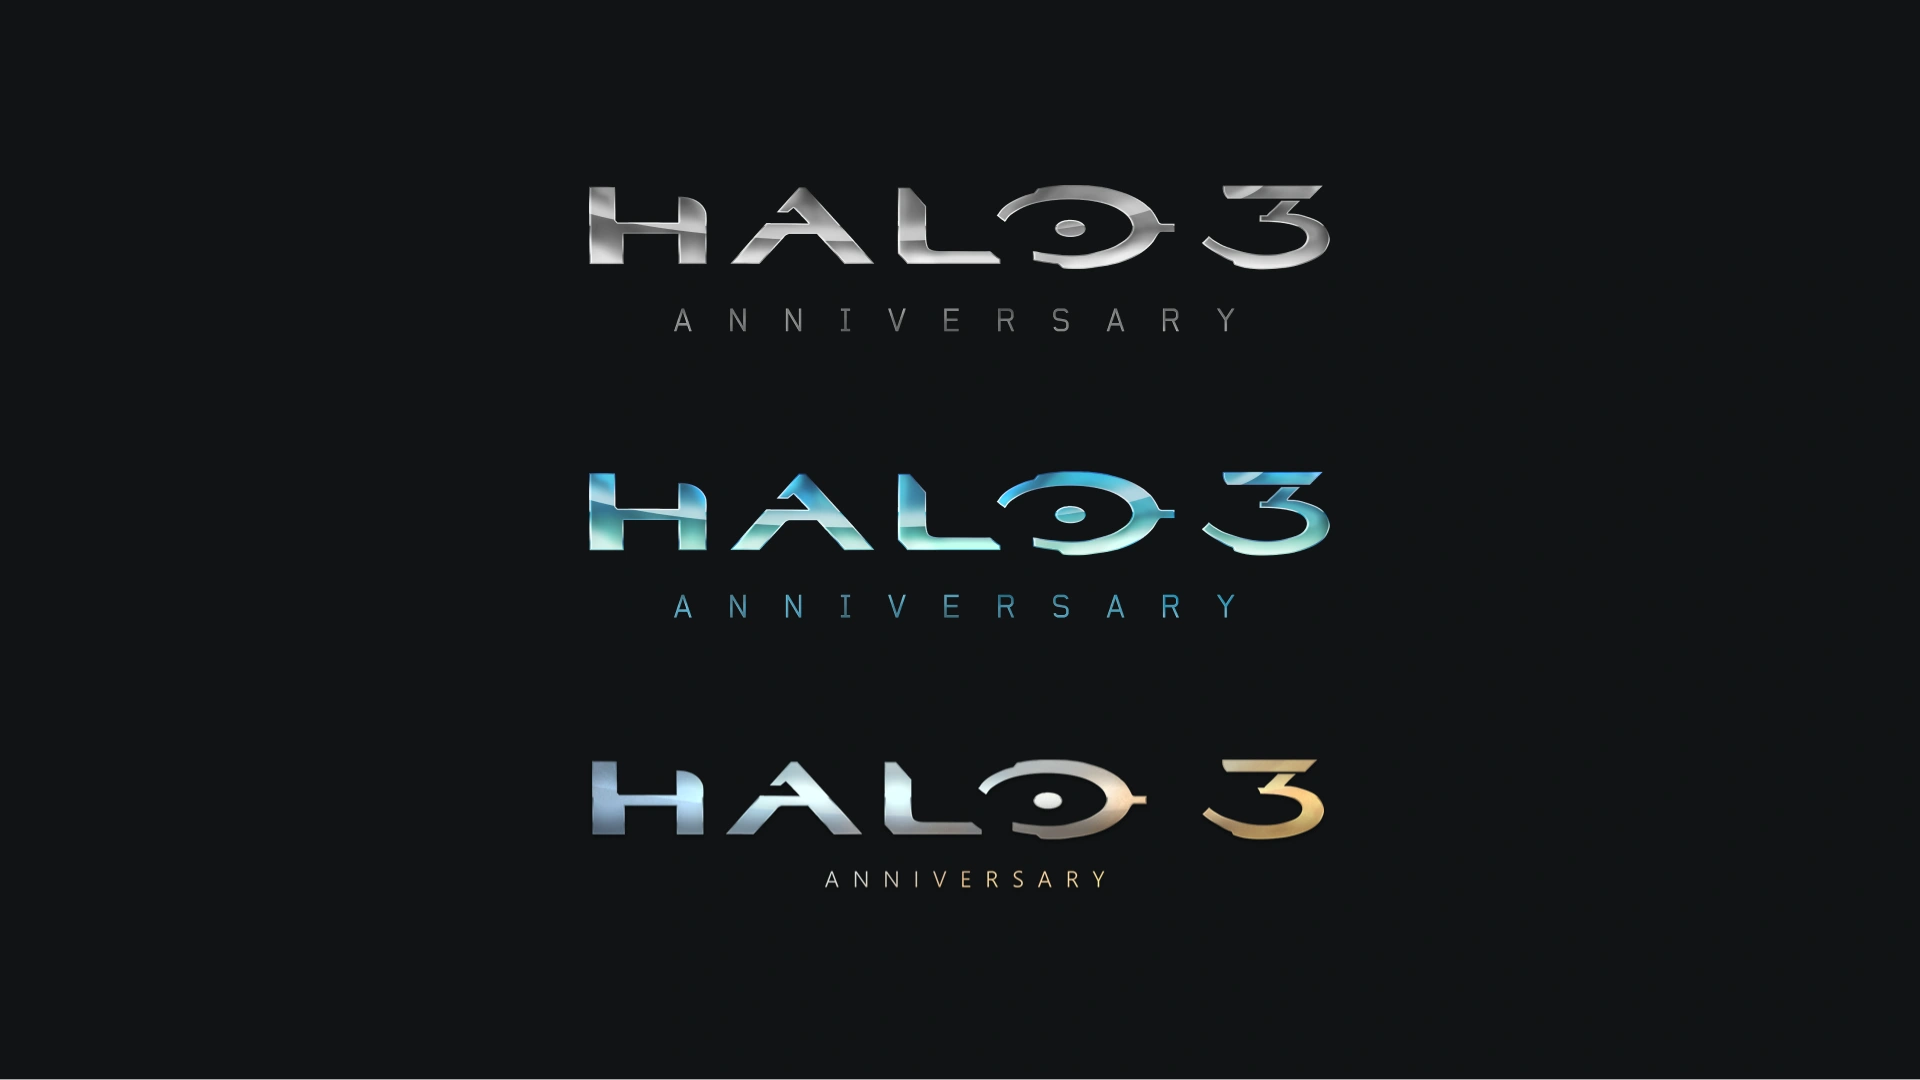 Halo 3 Anniversary logo alternatives